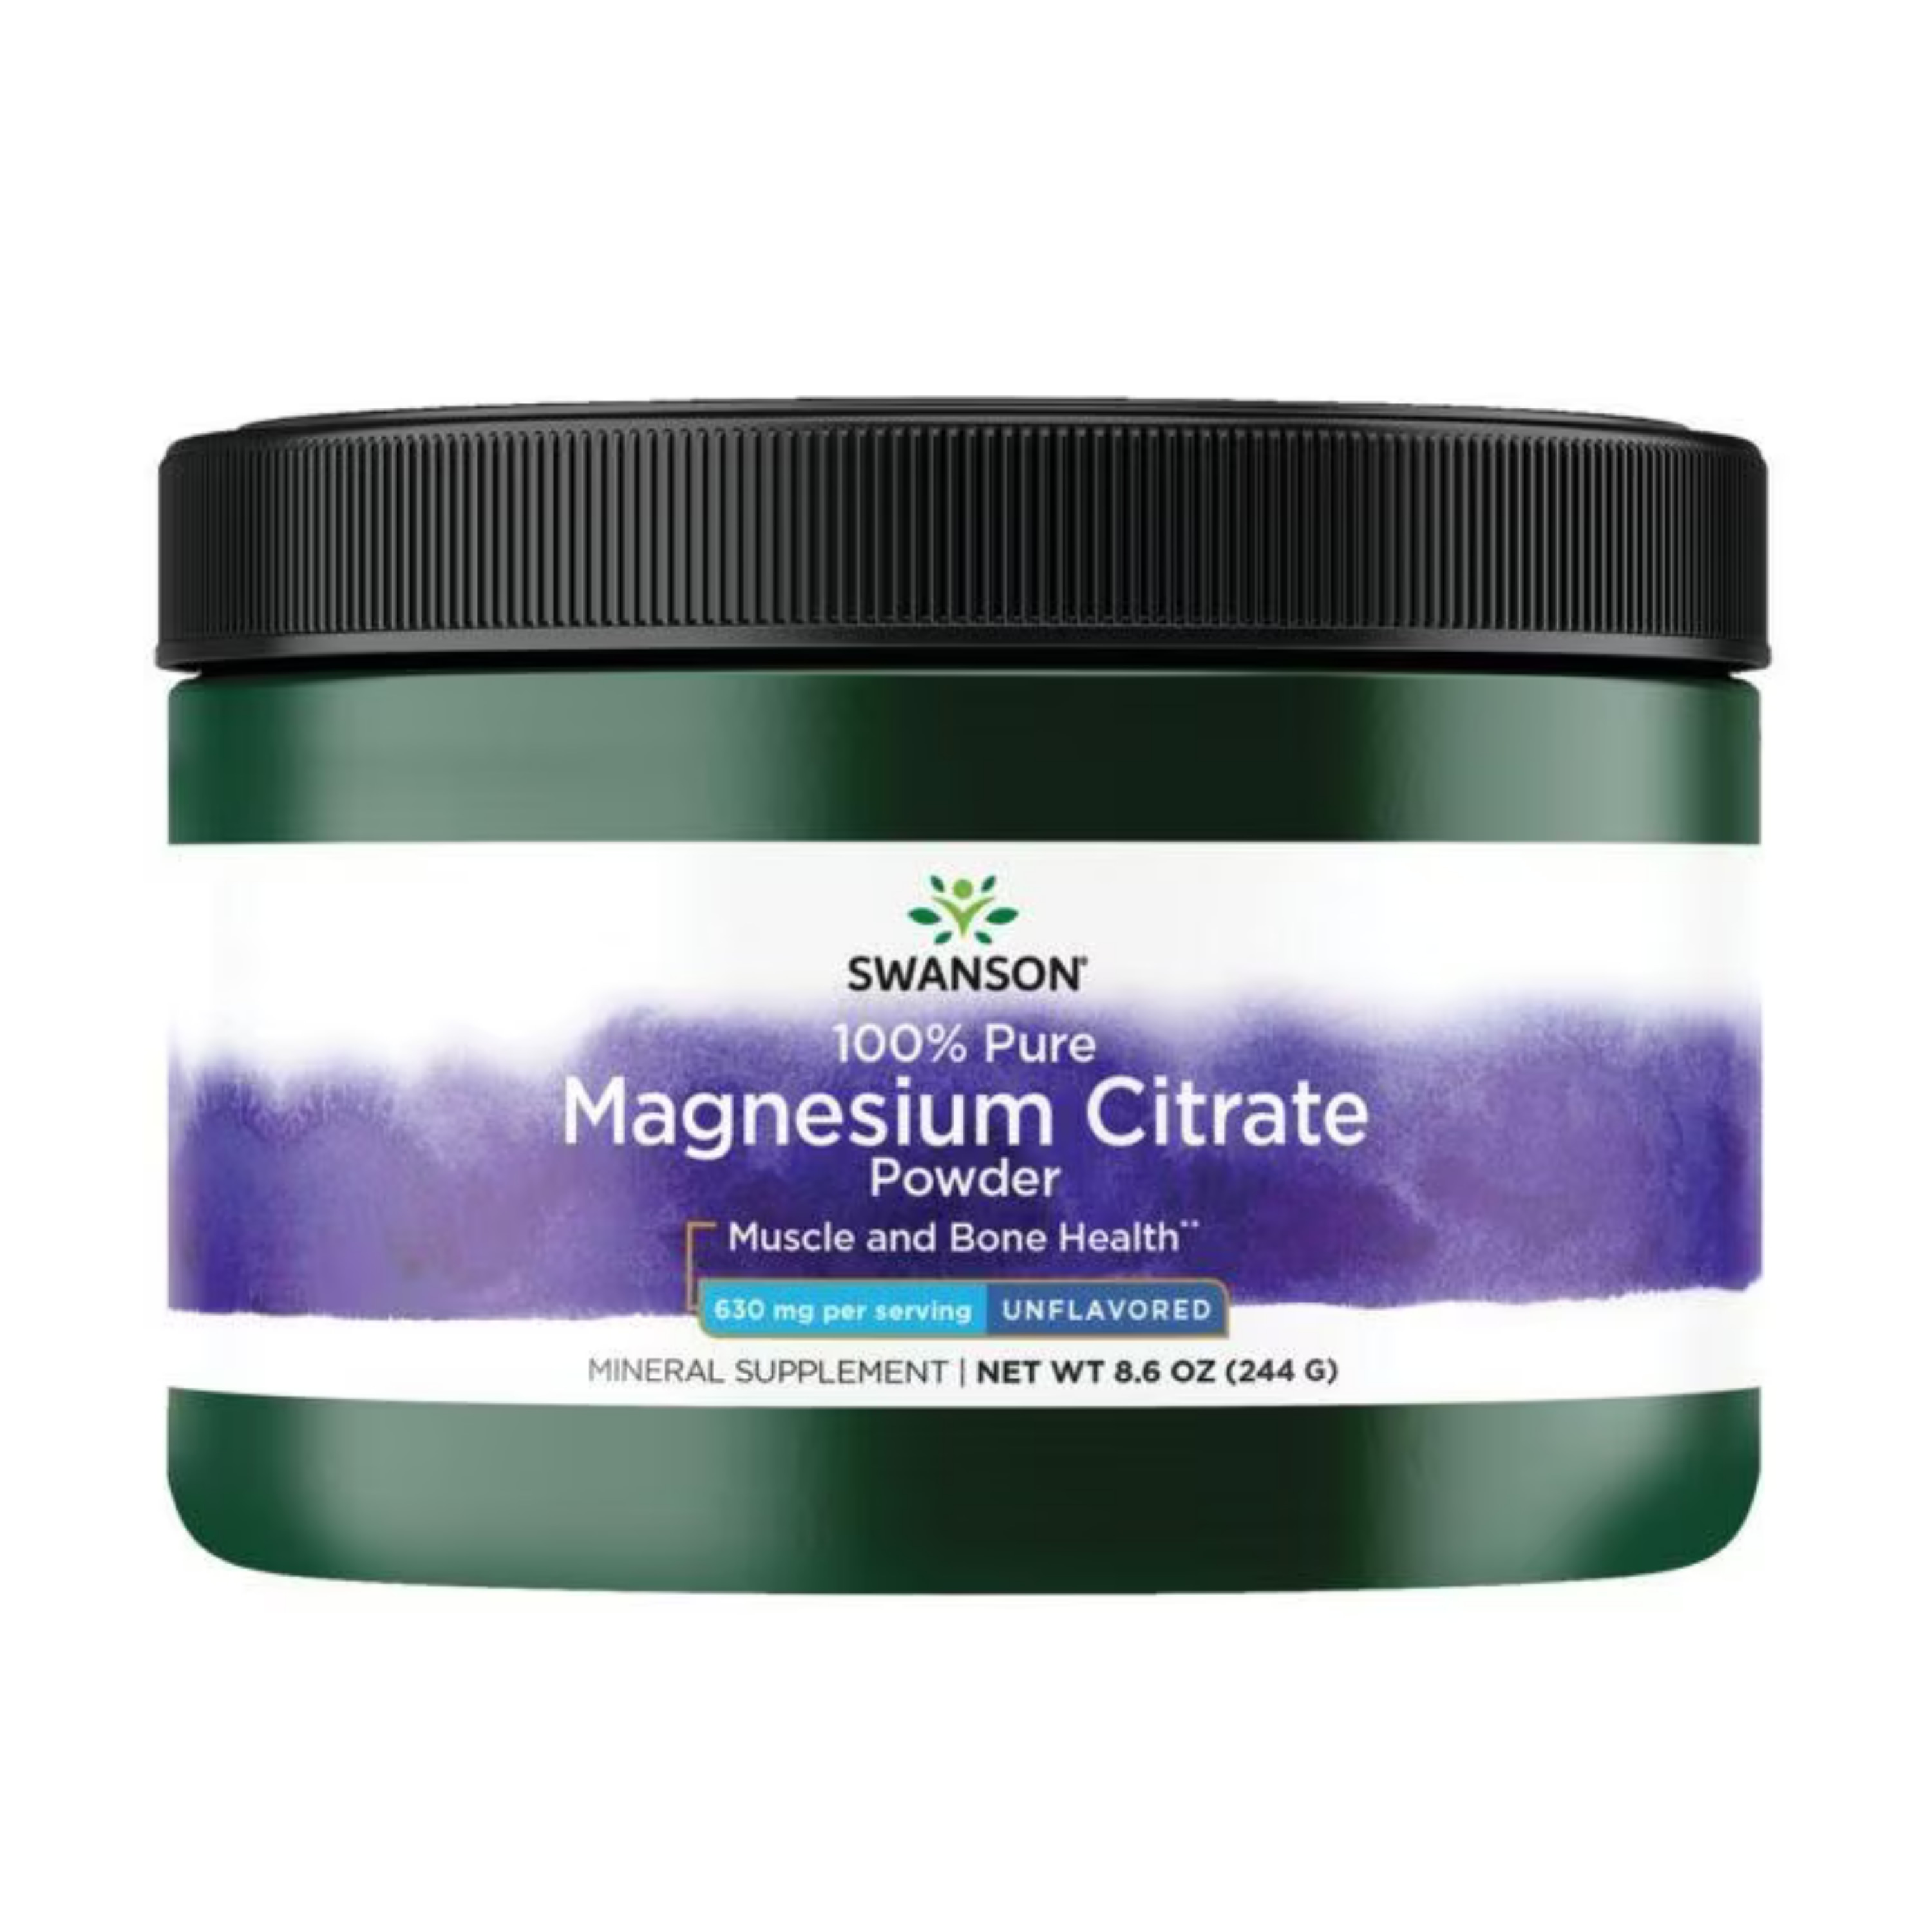 Magnesium Citrate Powder 244g